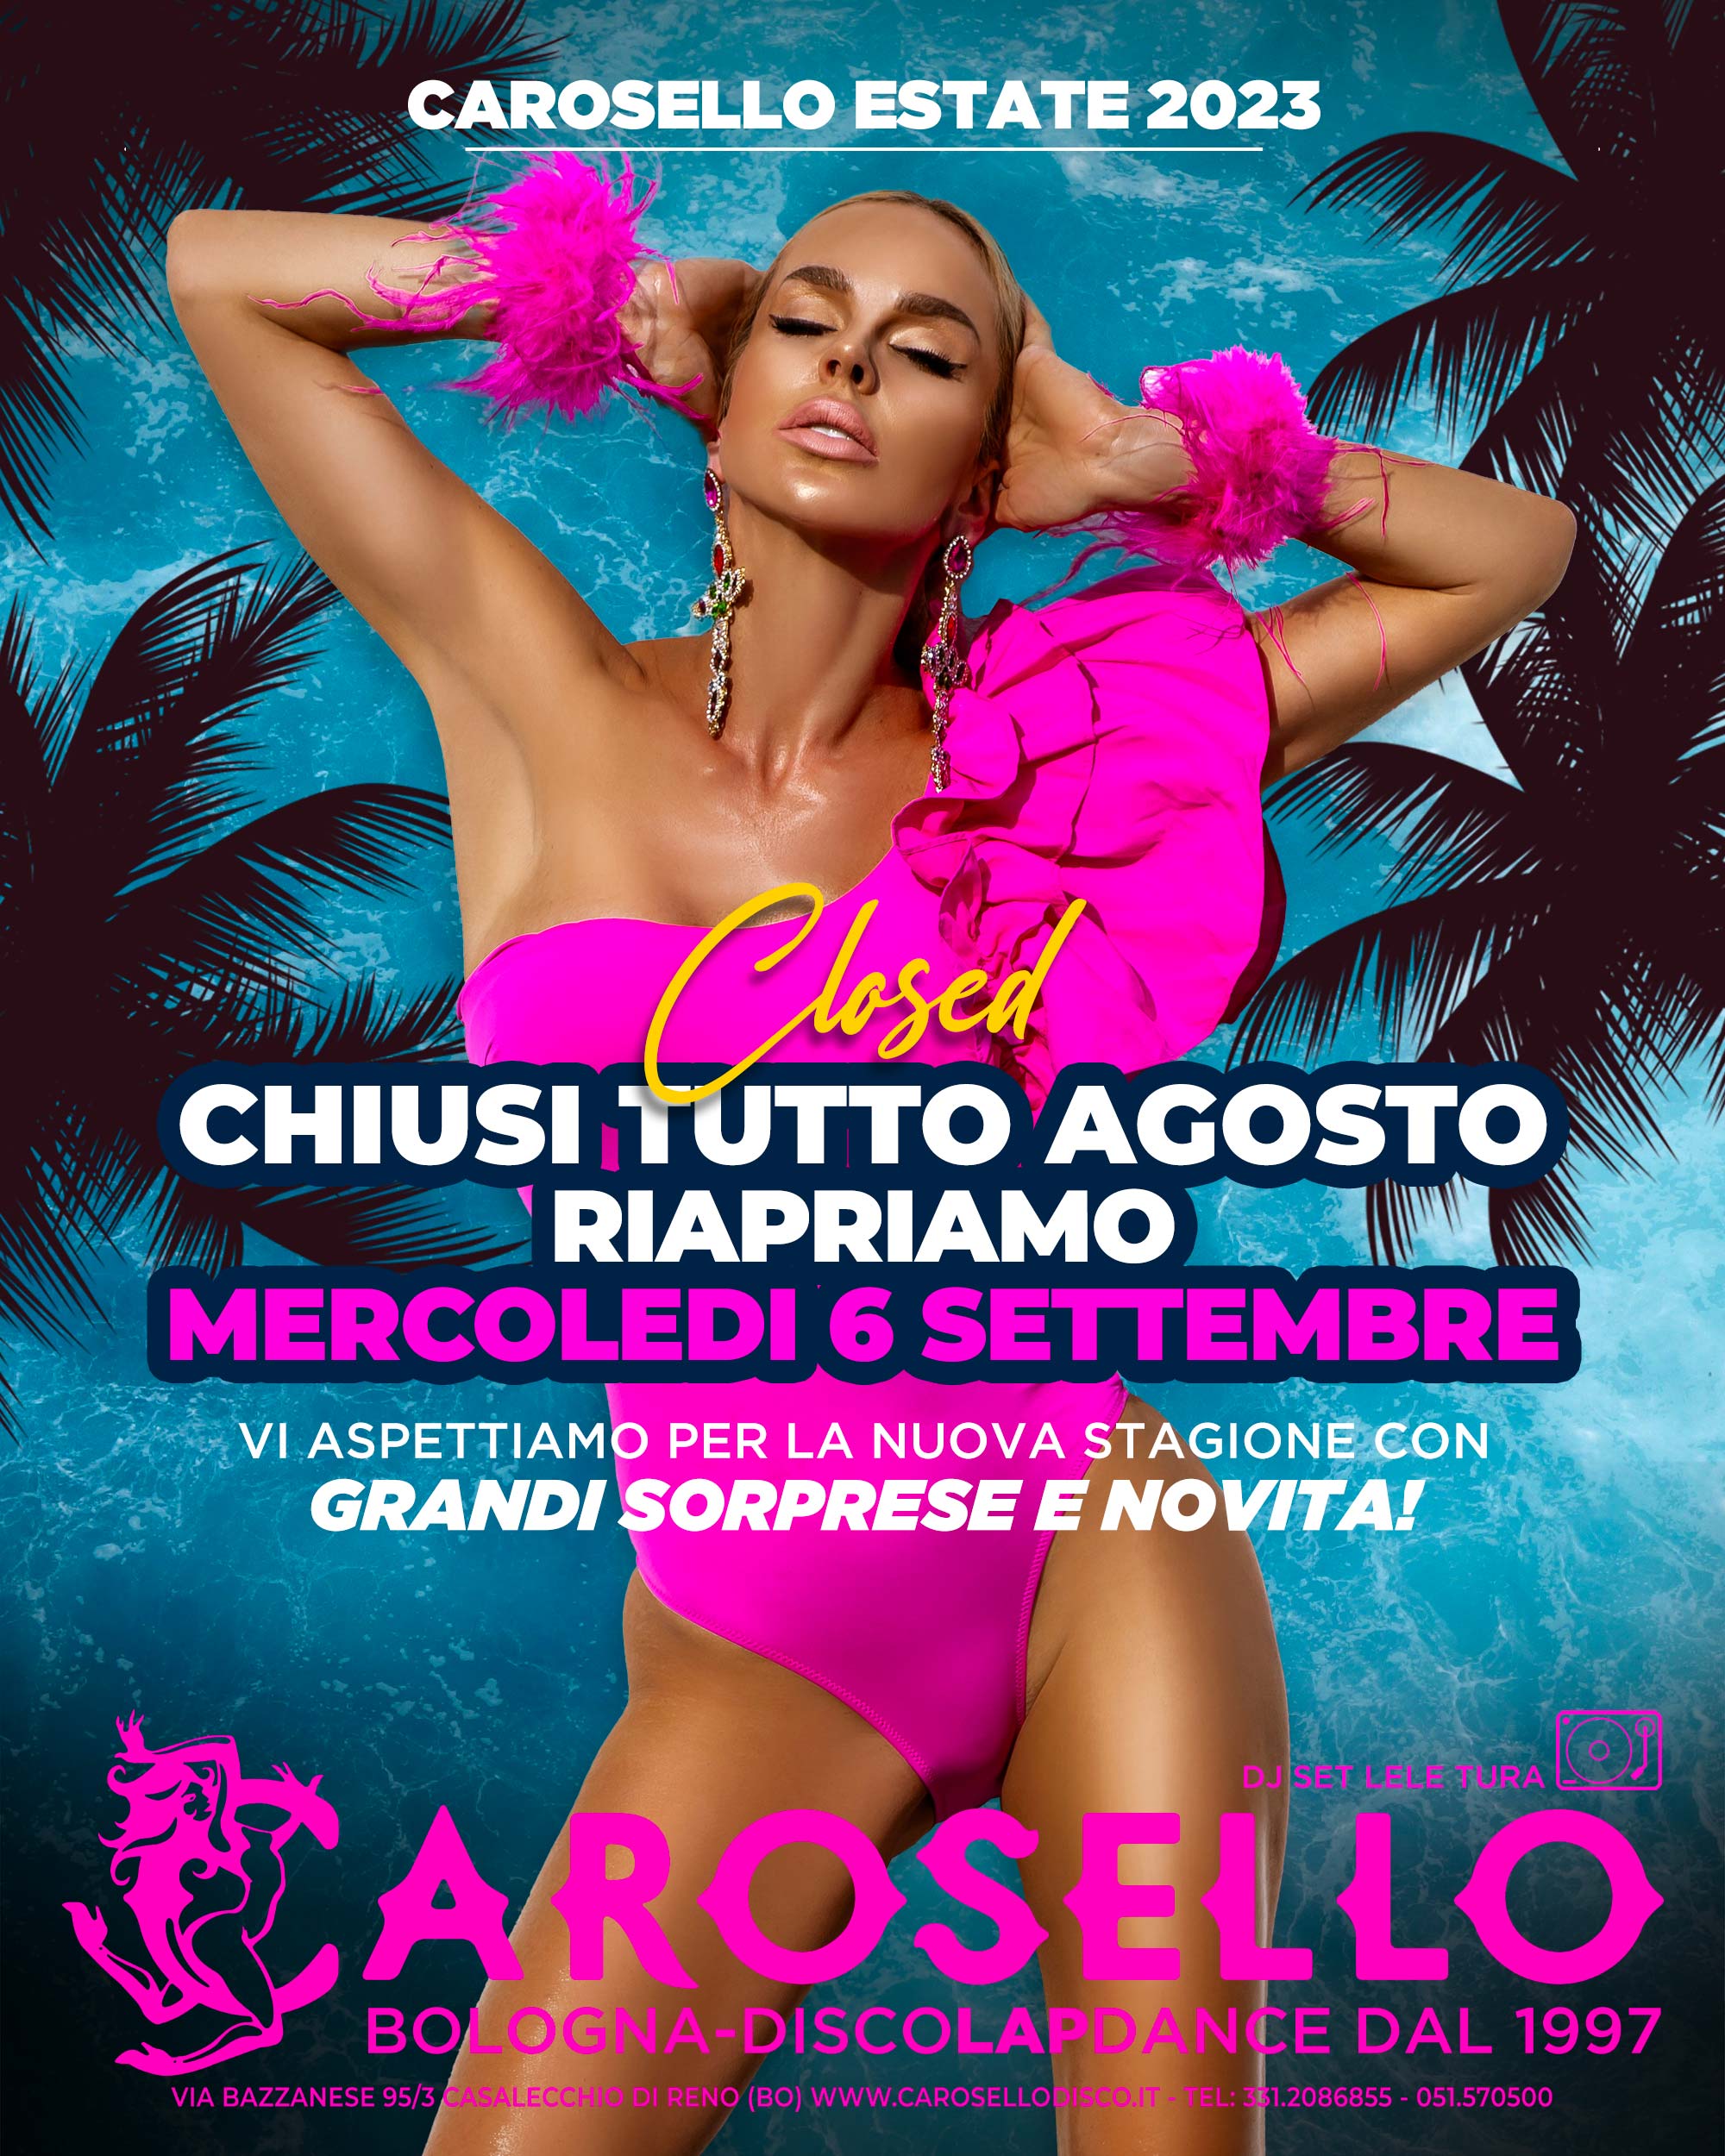 CAROSELLO Night Club Bologna Sexy Disco e Lap Dance Foto porno HD